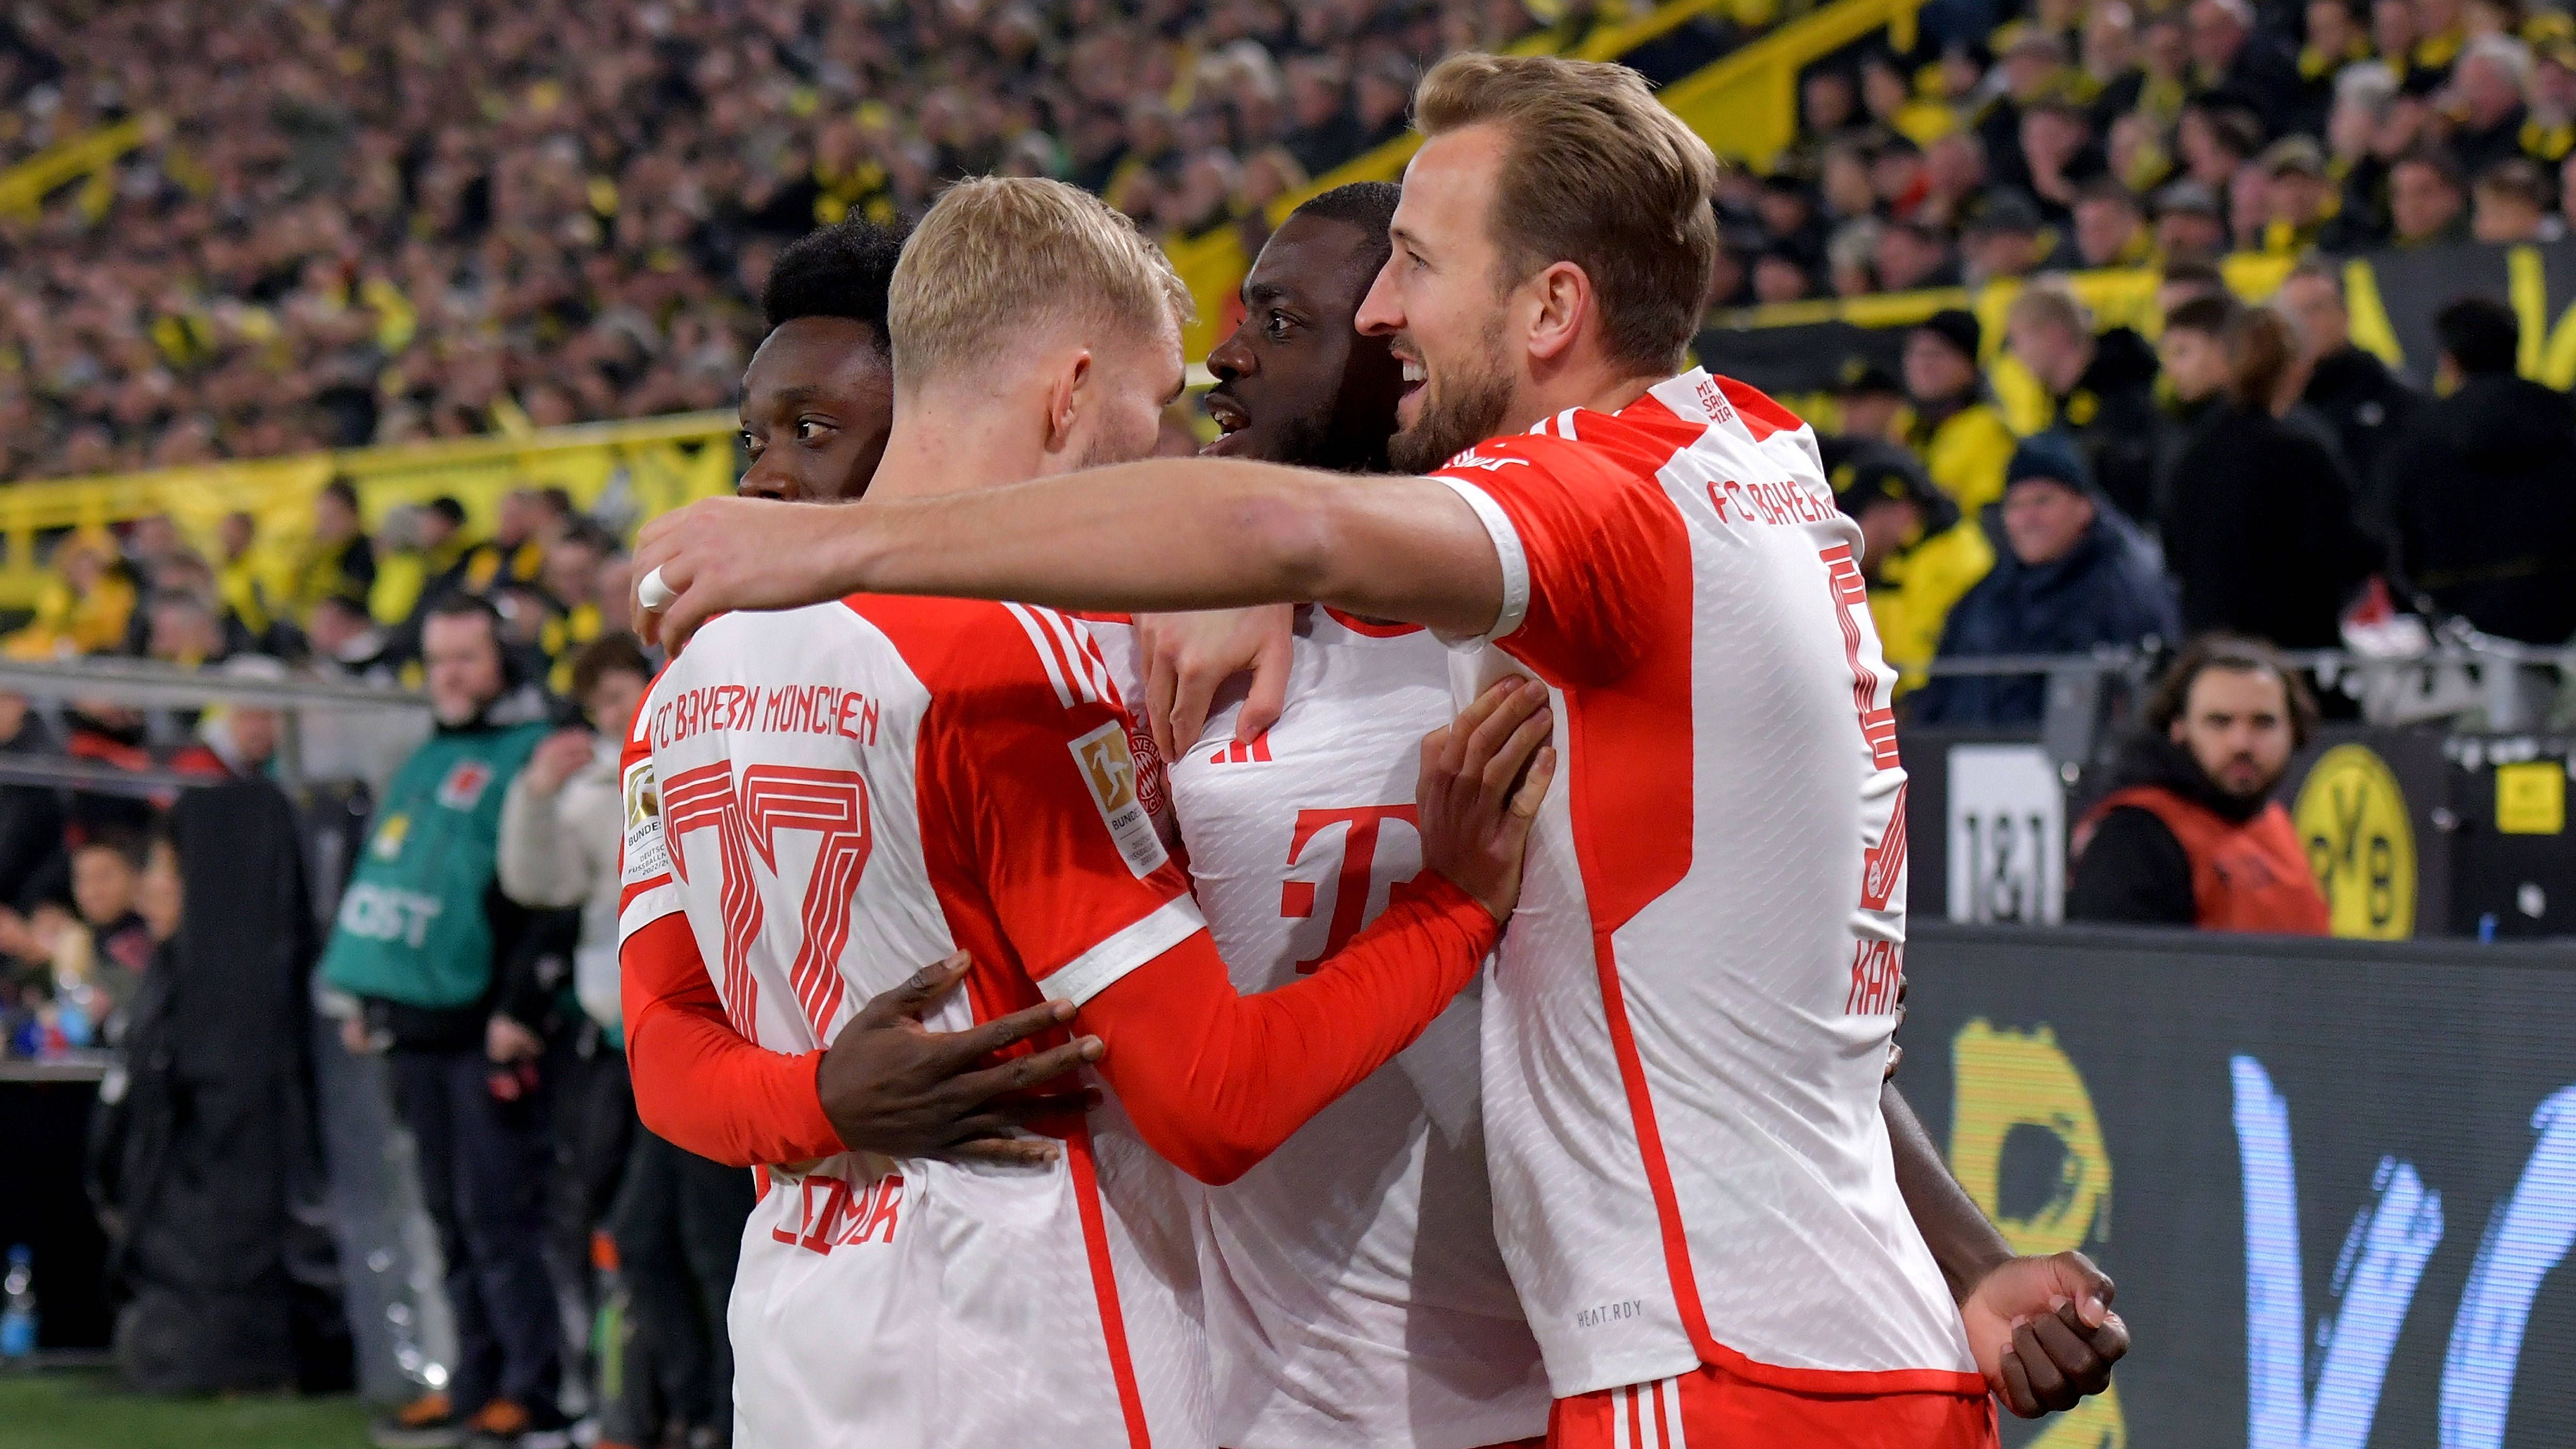 <strong>Einzelkritik: Die Noten der Bayern- und Dortmund-Stars<br></strong>Im Spitzenspiel des zehnten Spieltags gewinnt Bayern München mit 4:0 gegen Borussia Dortmund. <strong><em>ran</em></strong> hat alle Spieler bewertet.